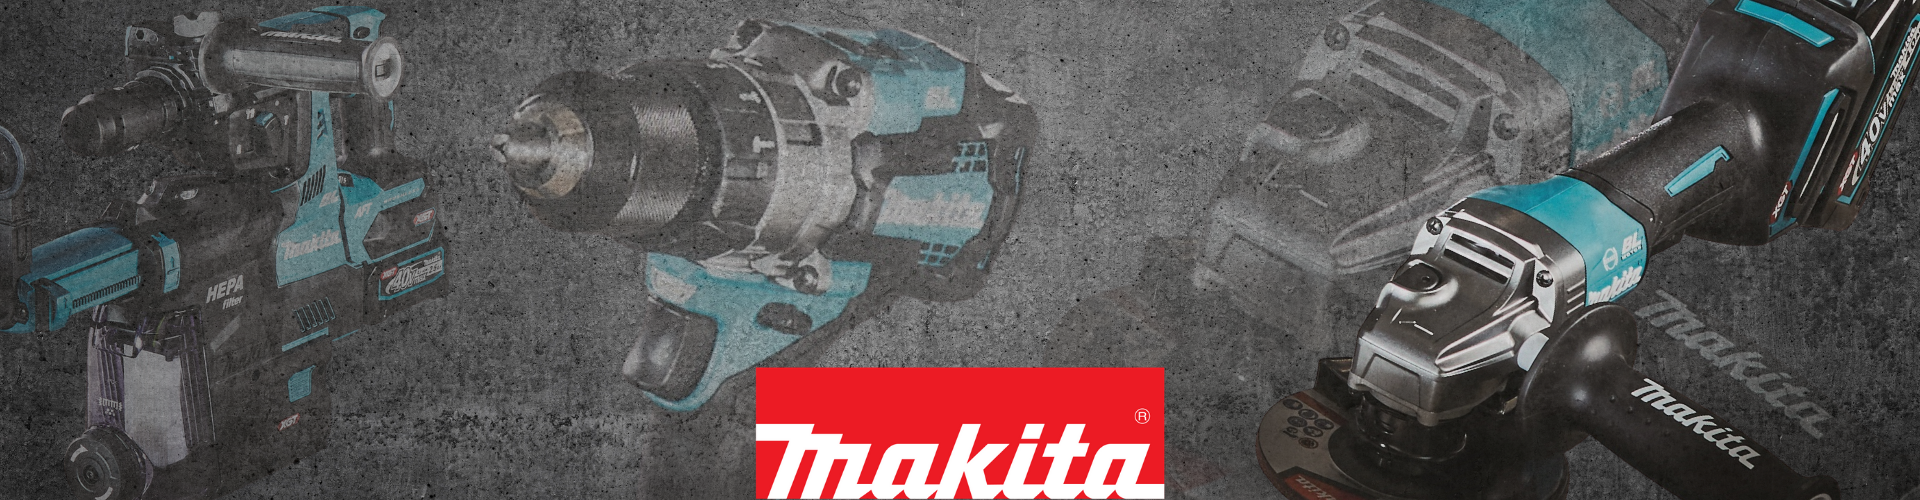 Makita Elekrowerkzeuge von DEXIS Austria für Profis